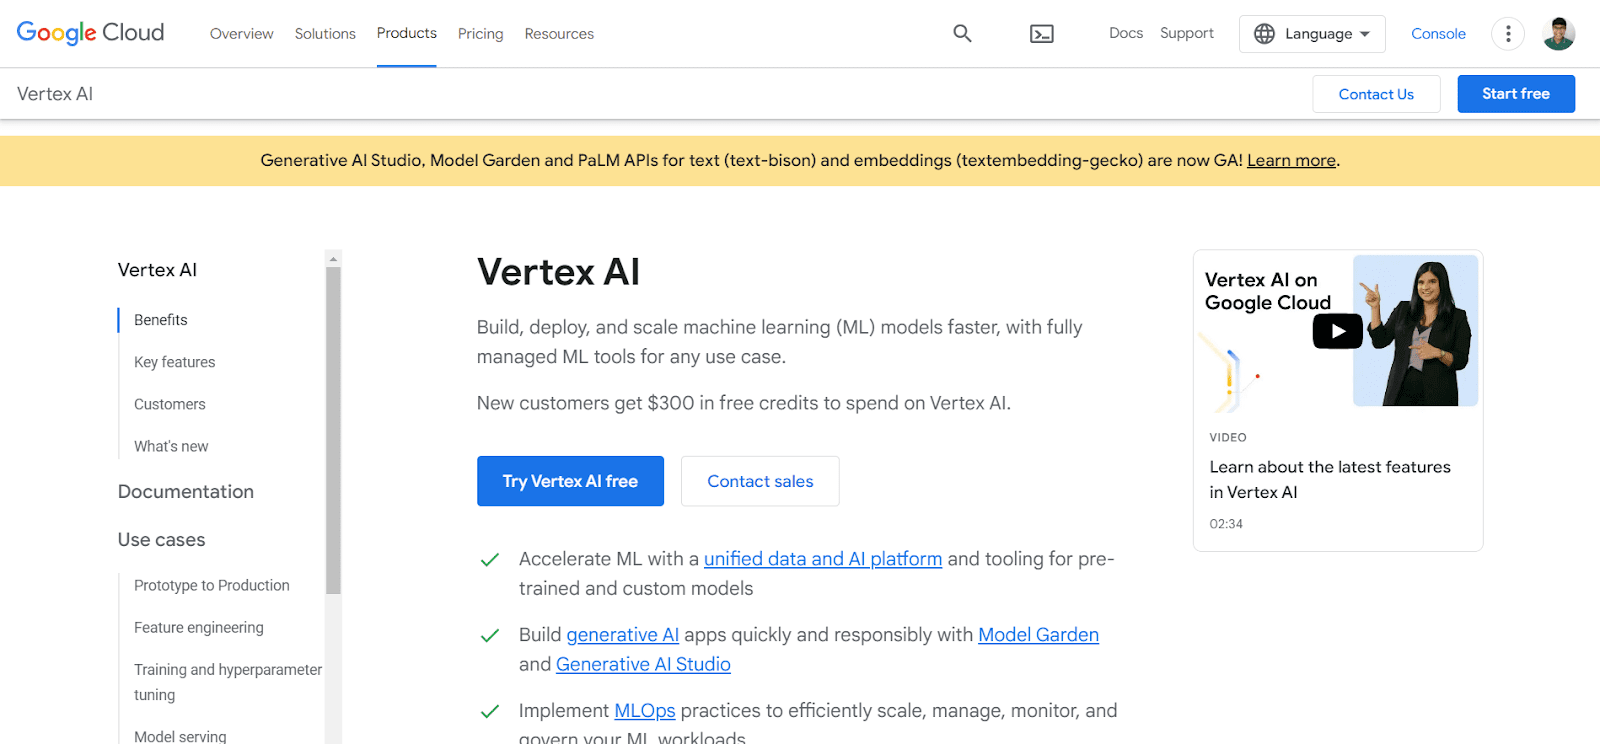 A screenshot of Vertext AI's website